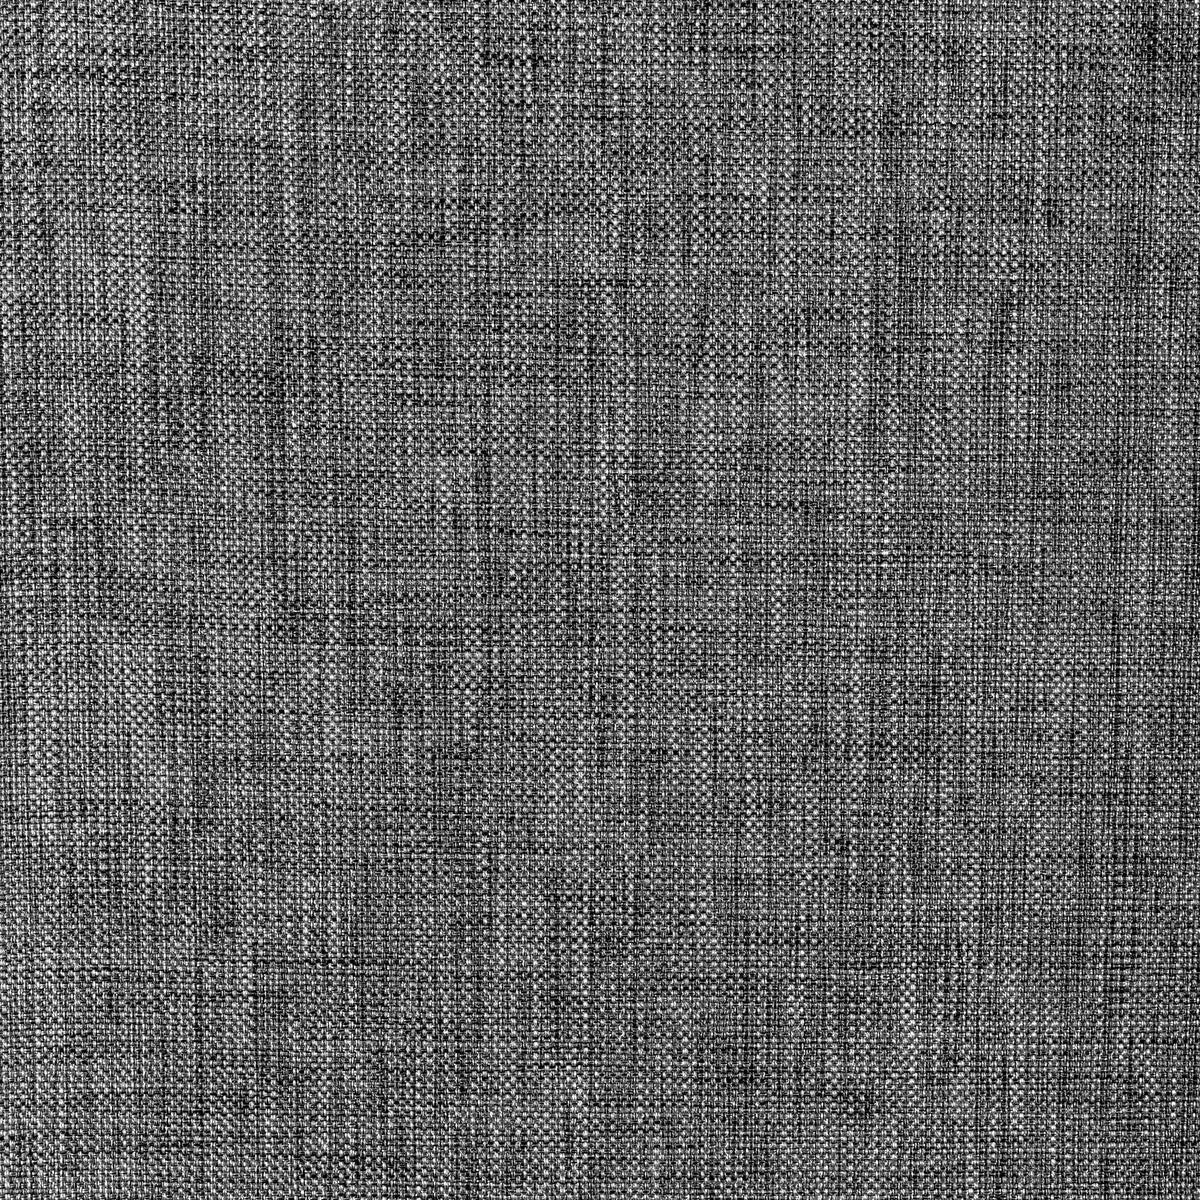 Kravet Basics fabric in 30299-811 color - pattern 30299.811.0 - by Kravet Basics